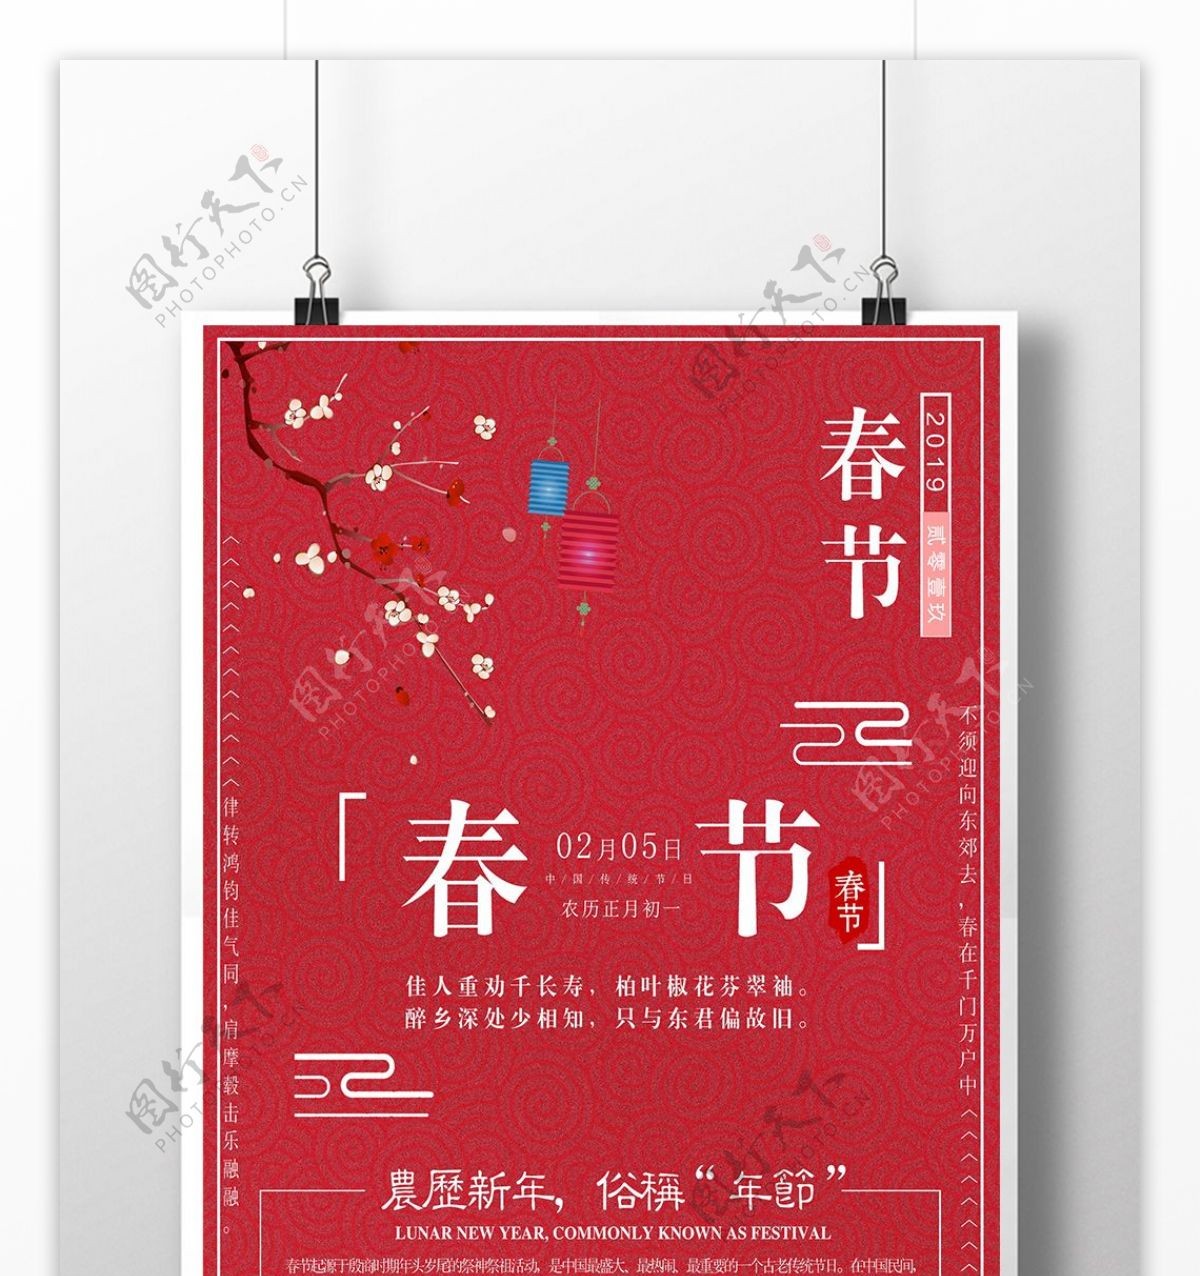 简约清新春节创意海报